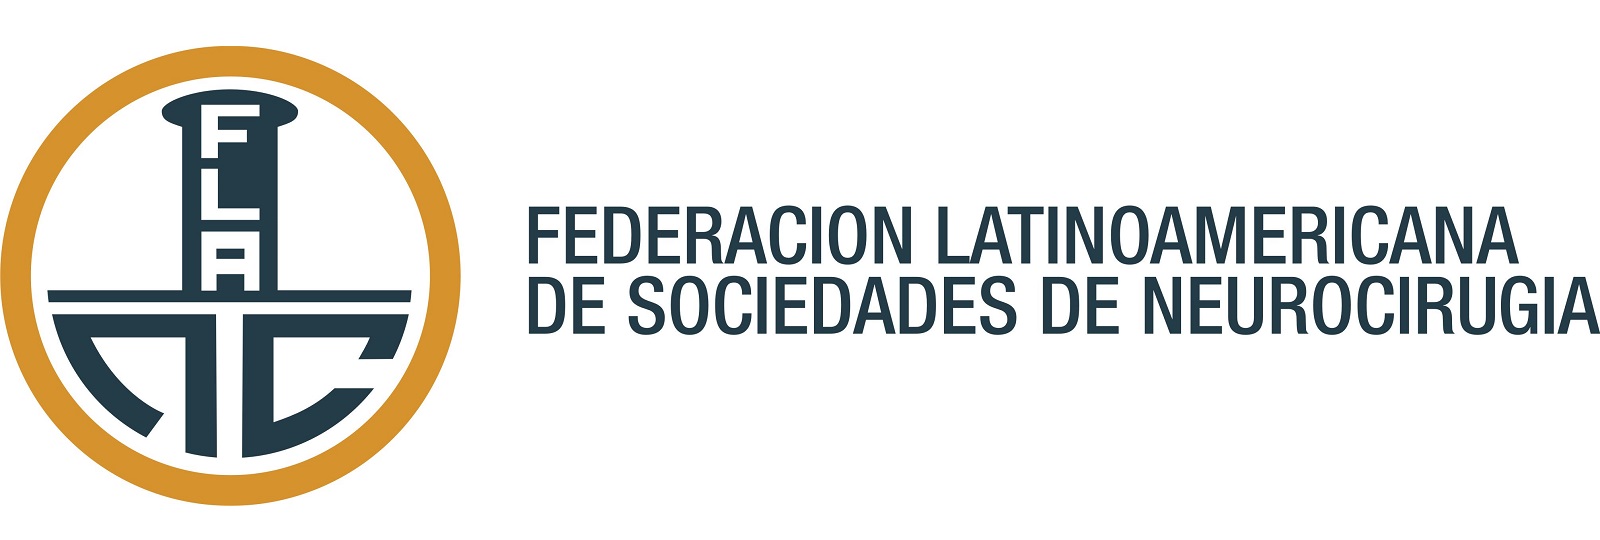 Federacion Latino Americana De Sociedades De Neurocirugia